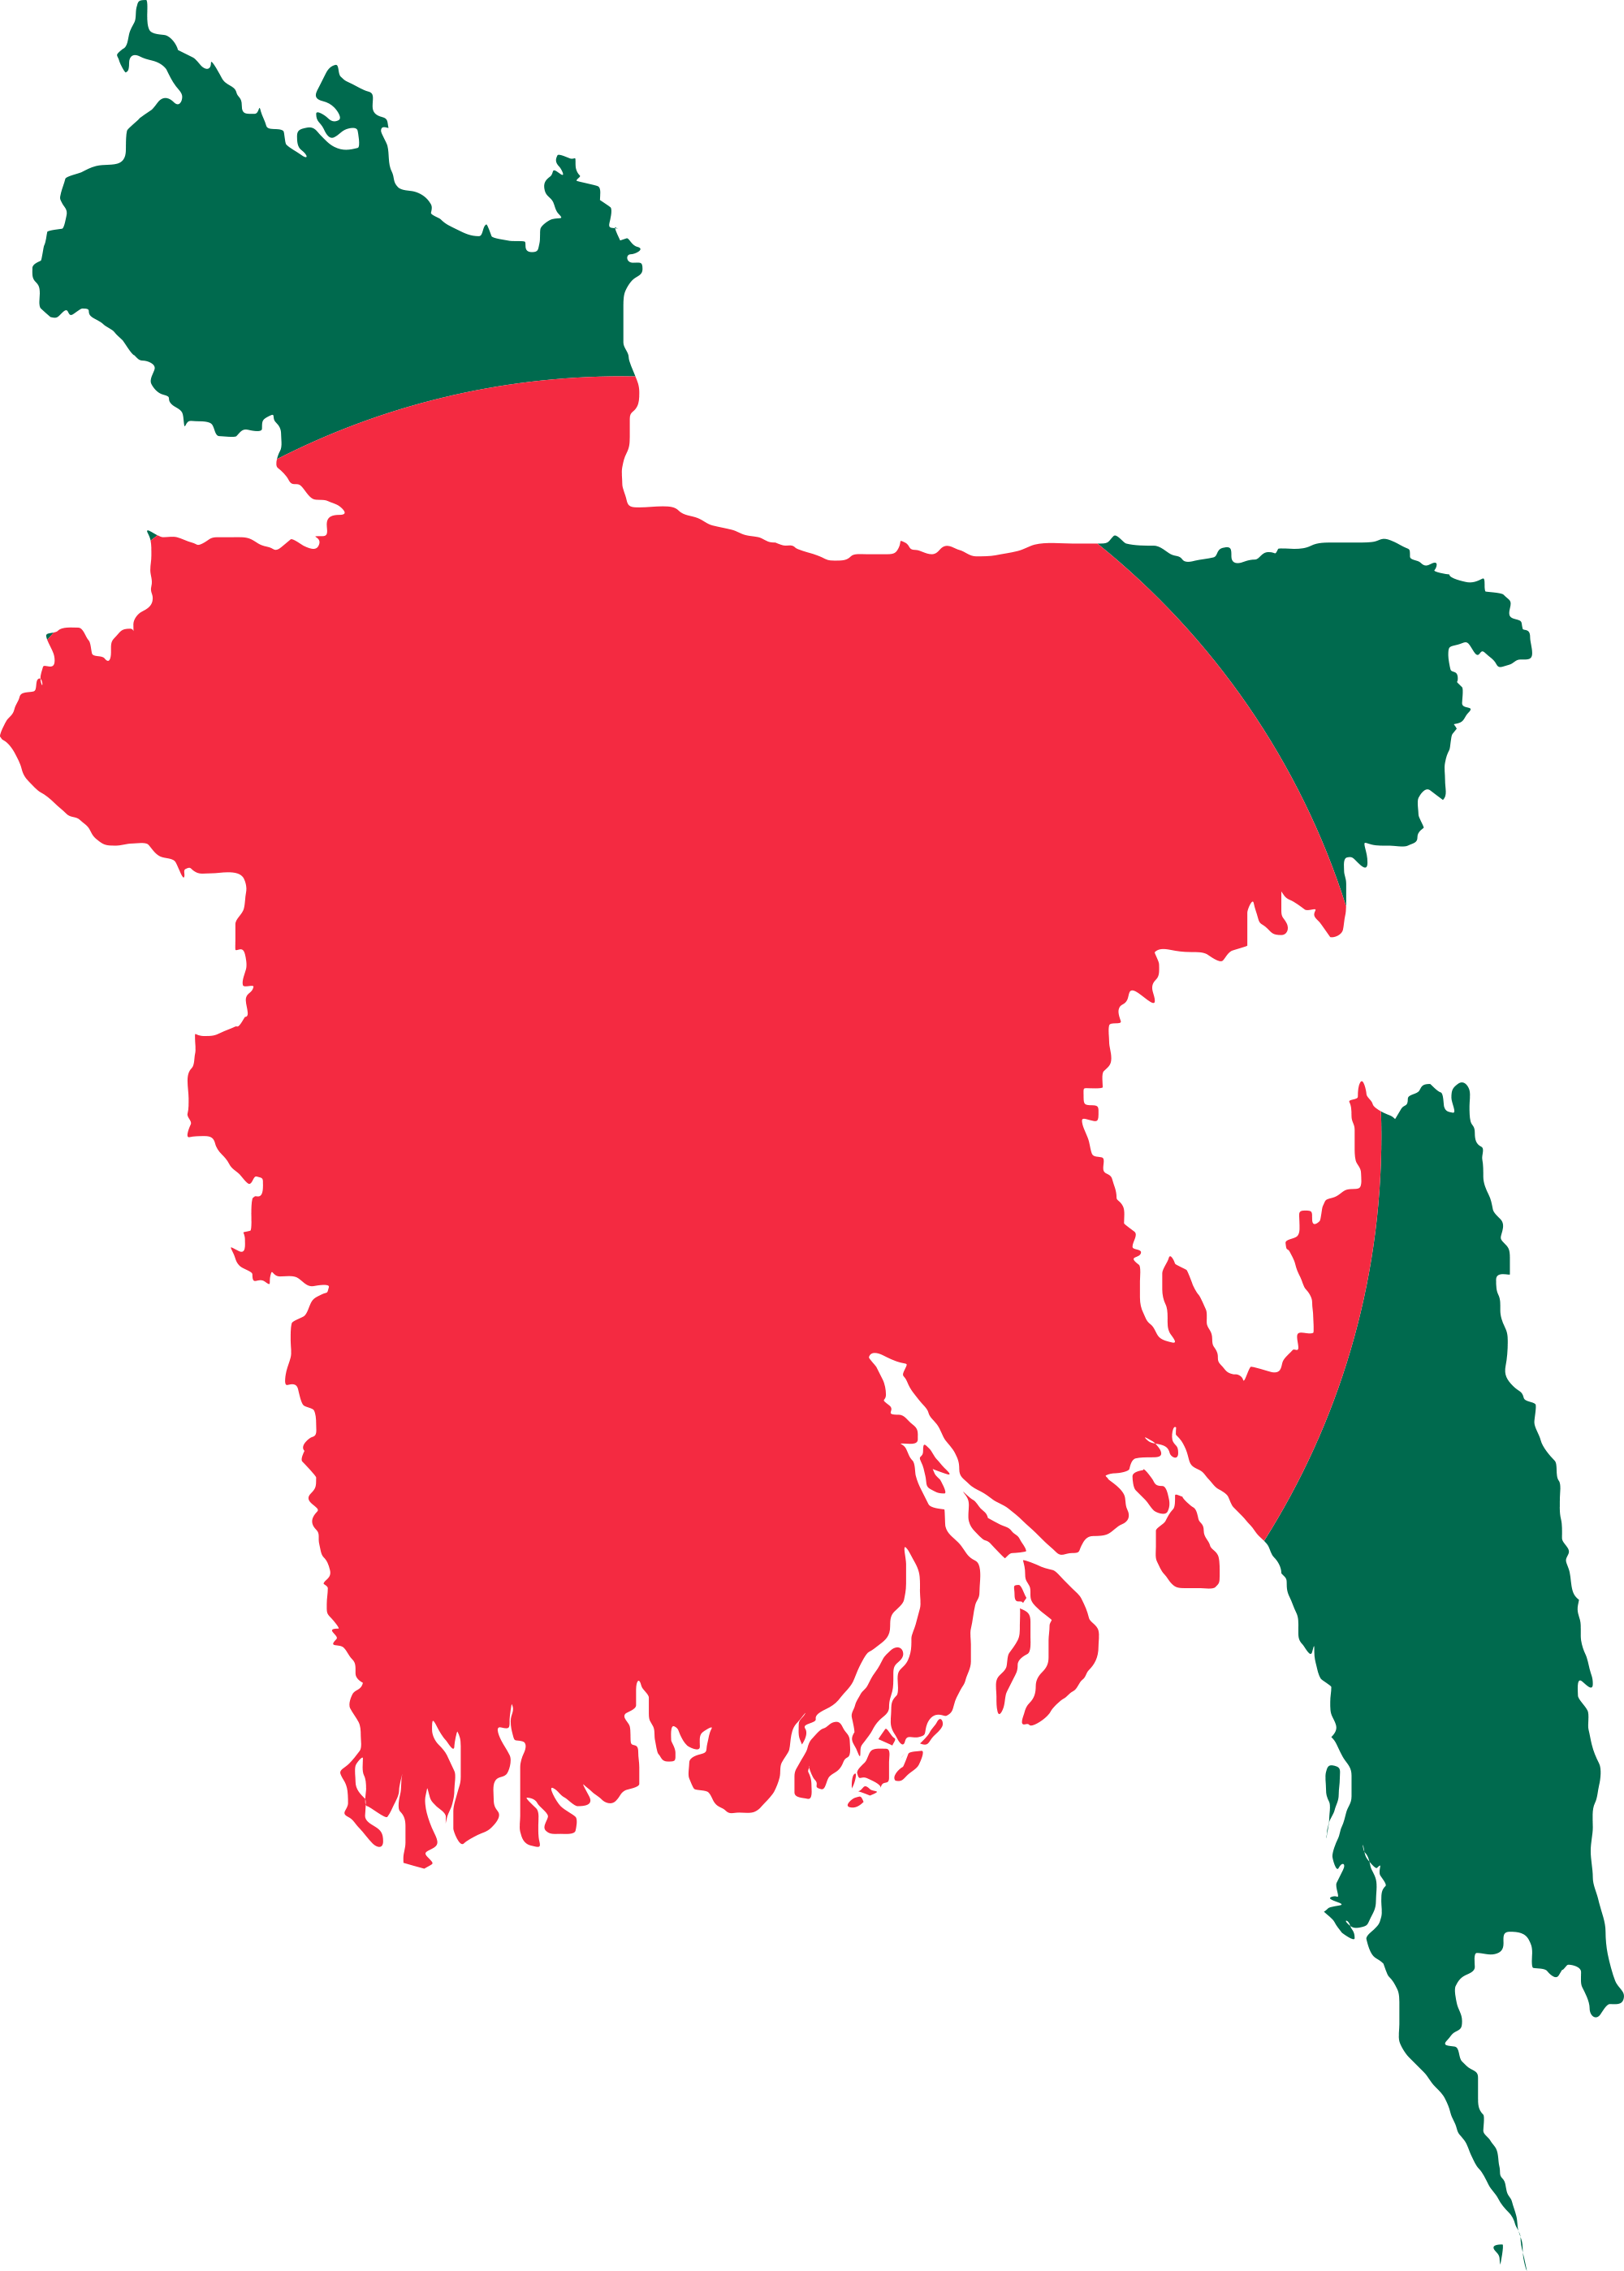 Bangladesh map in bangladesh flag color